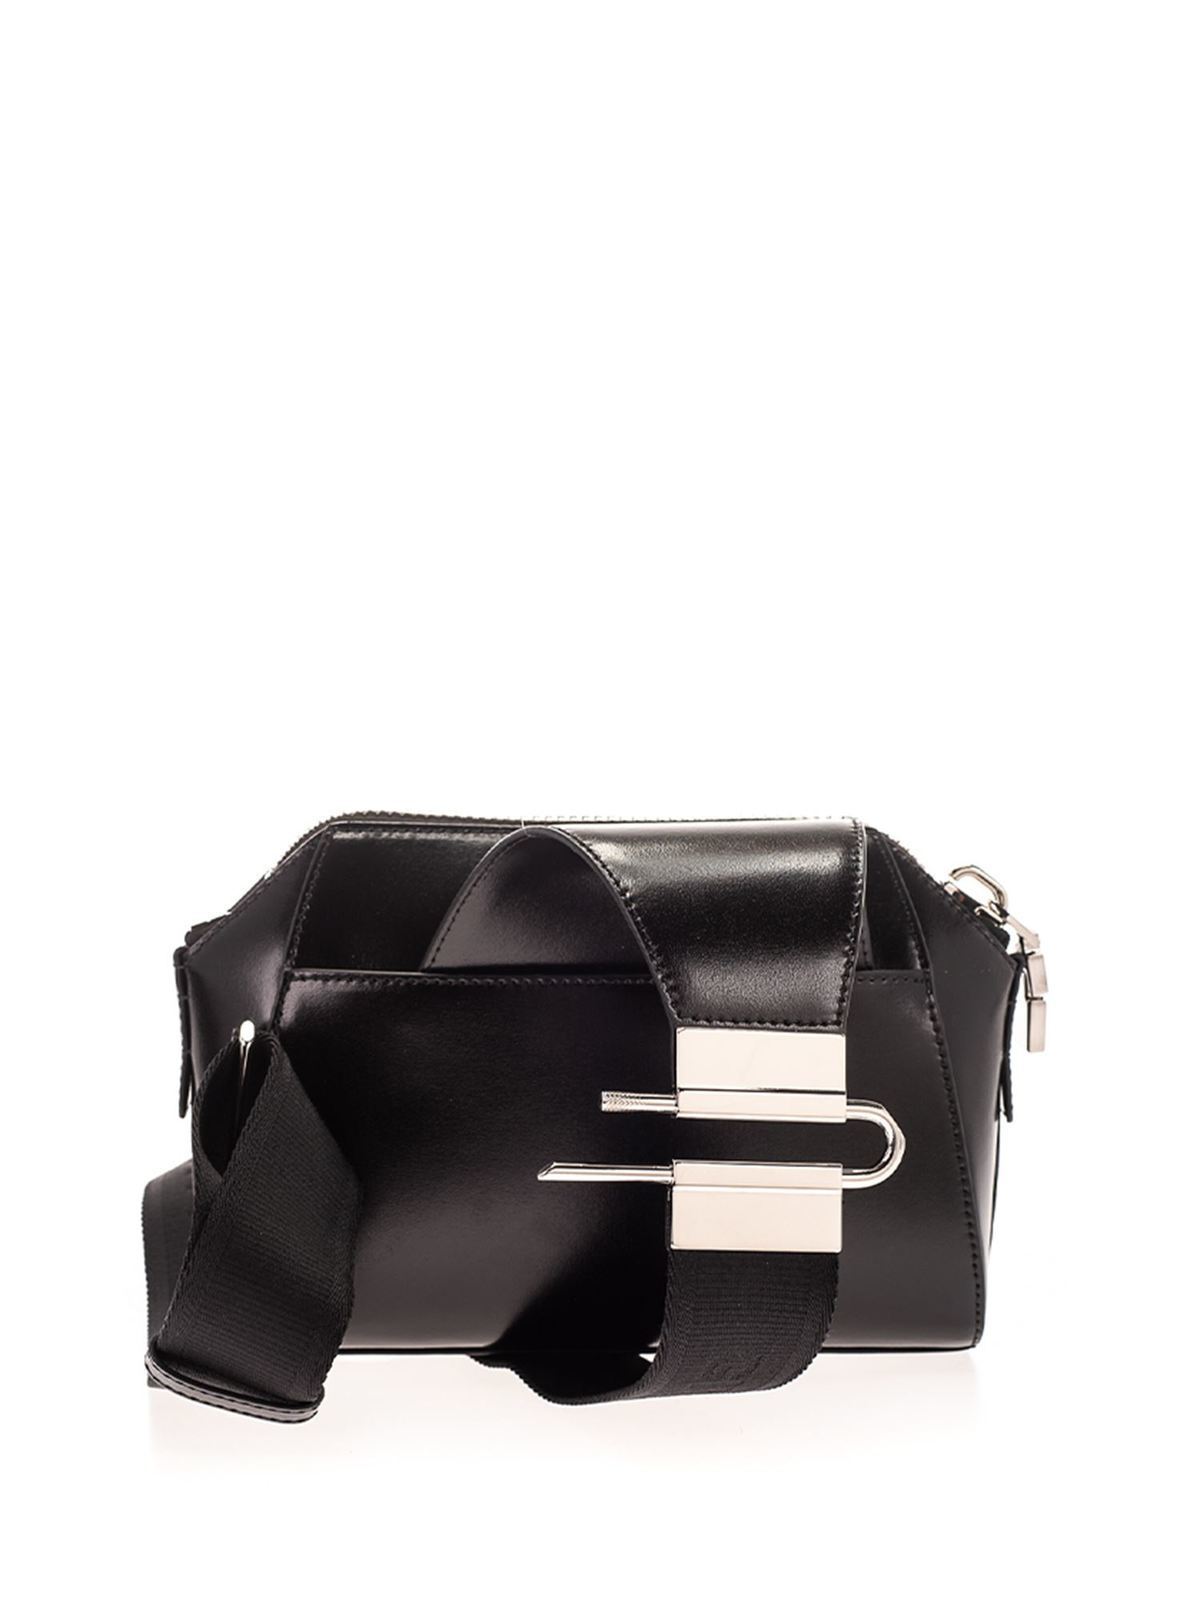 body bags Givenchy - Small Antigona bag in black -